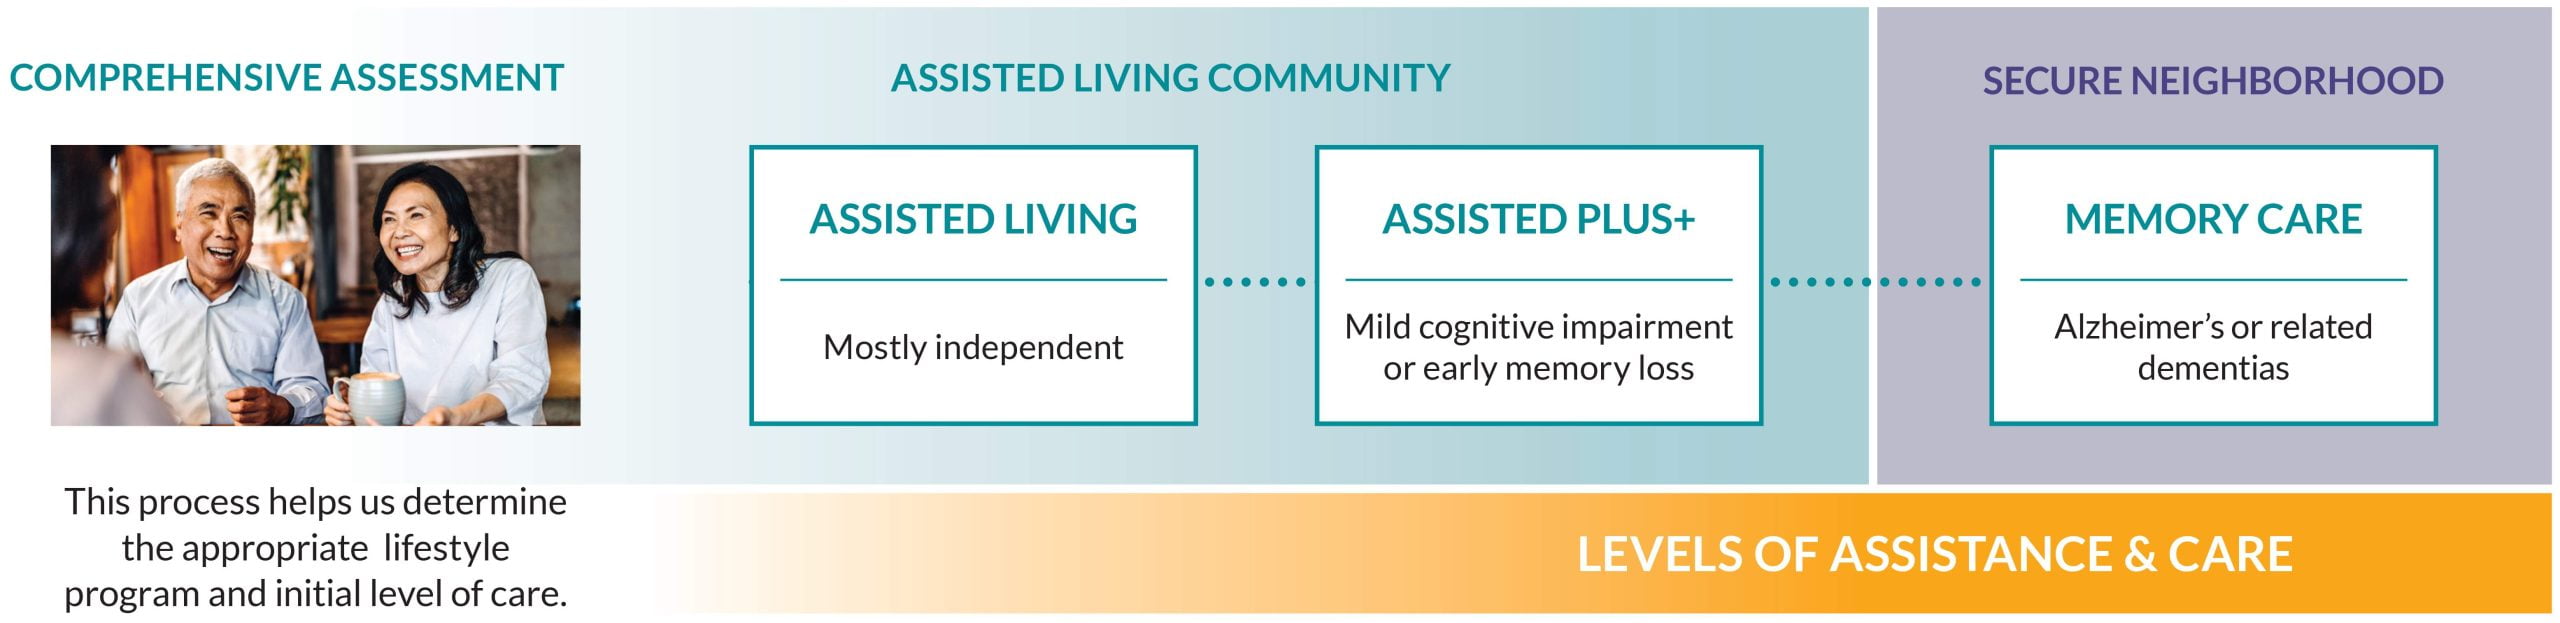 senior living care level assessment horizontal